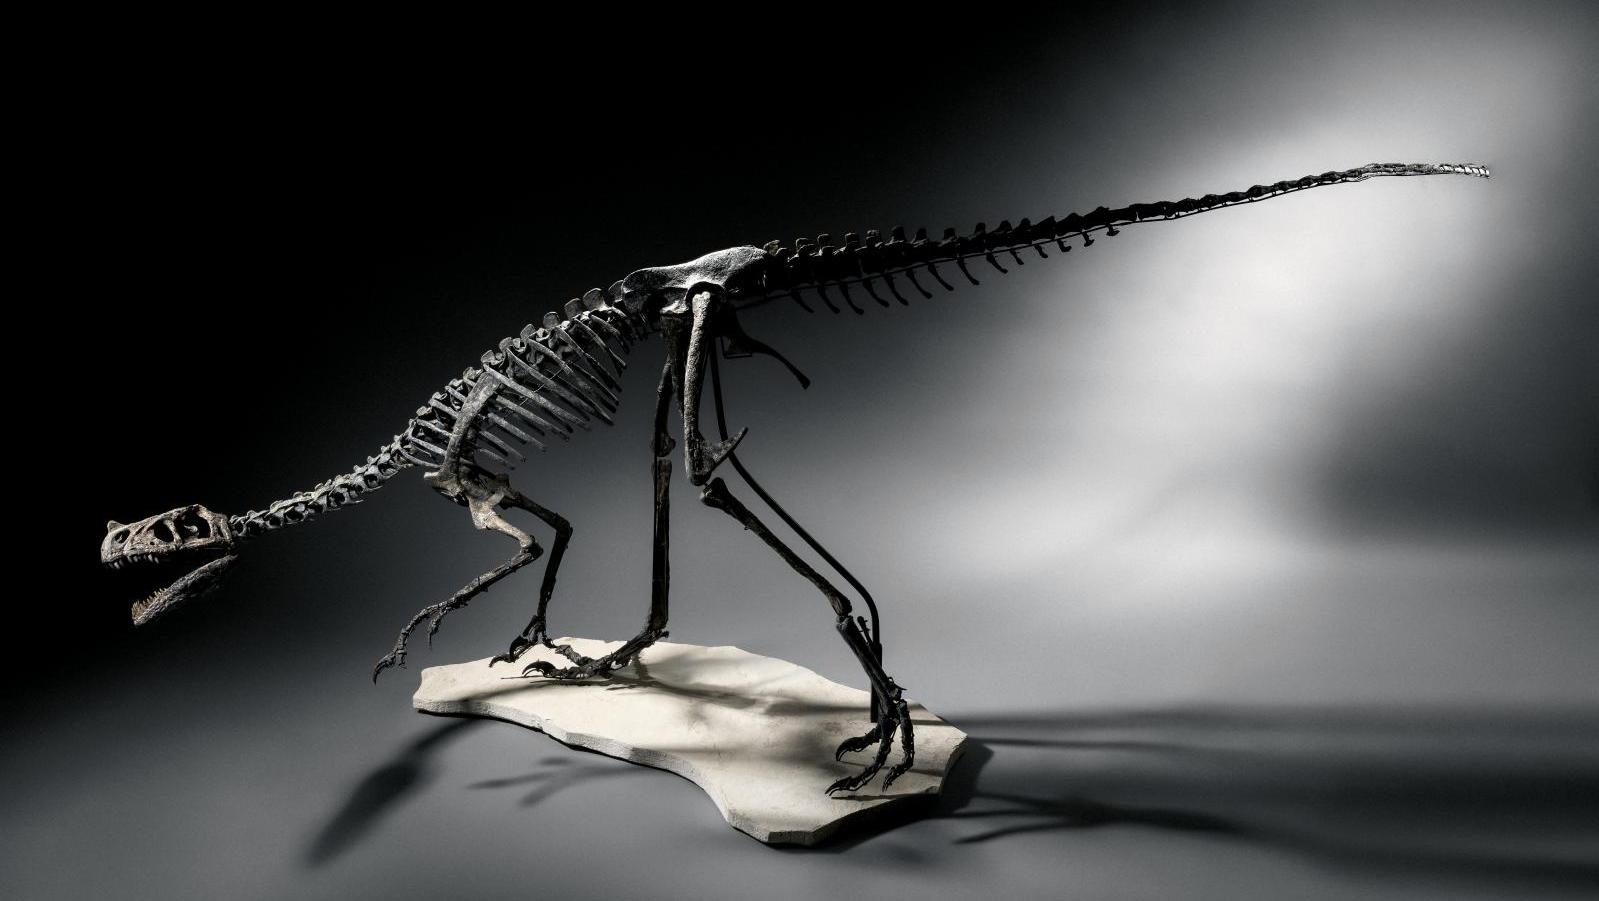 Dinosaure théropode carnivore, formation de Morrison, Jurassique supérieur, Kimméridgien... La chasse aux tentations